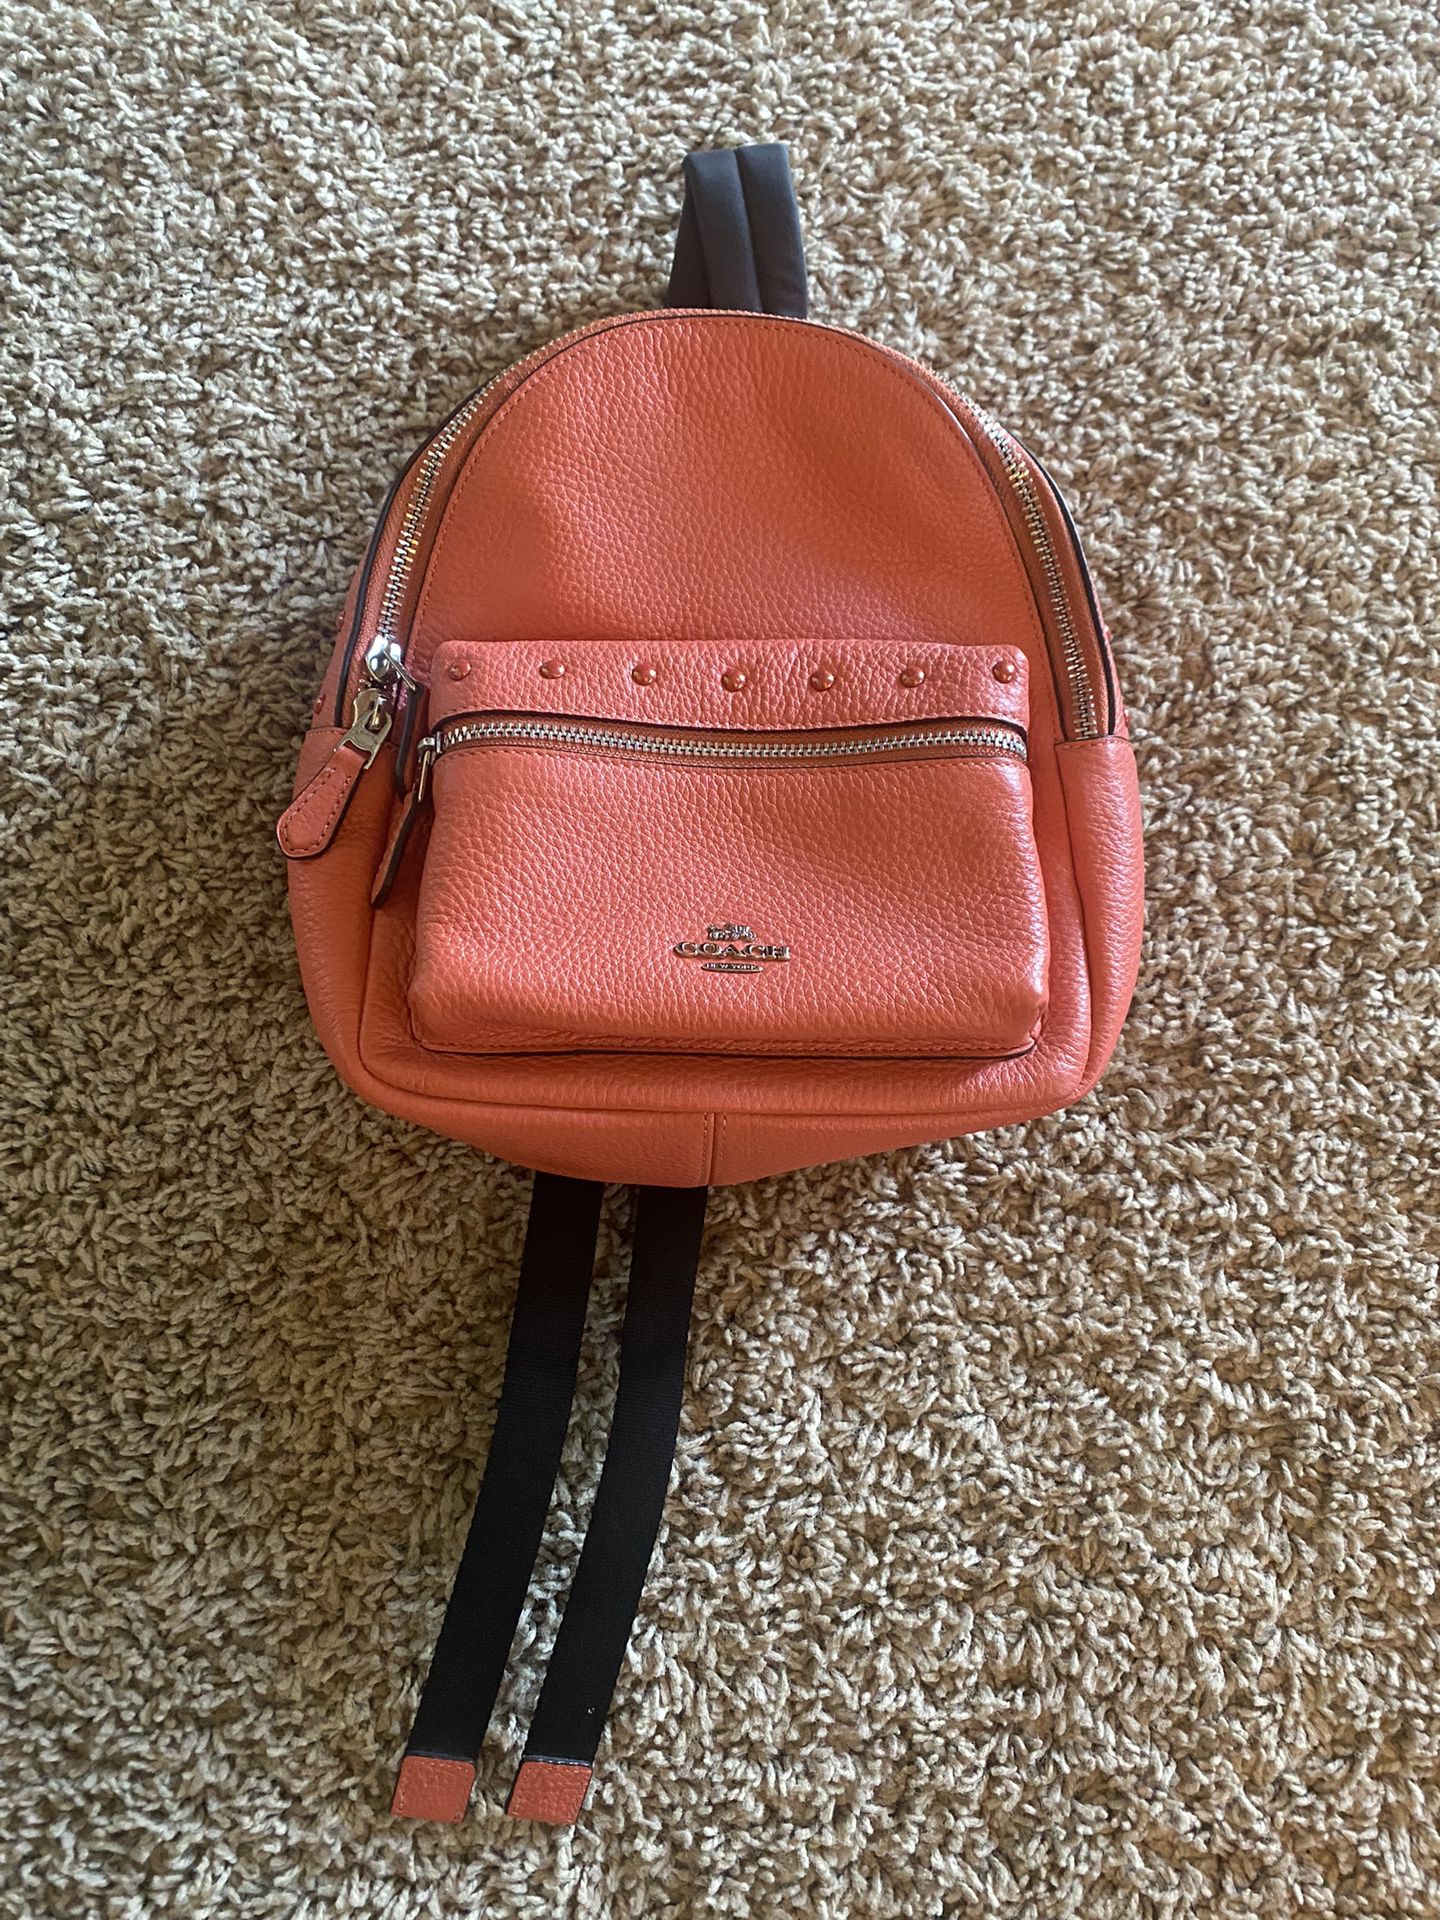 Coach Mini Backpack 